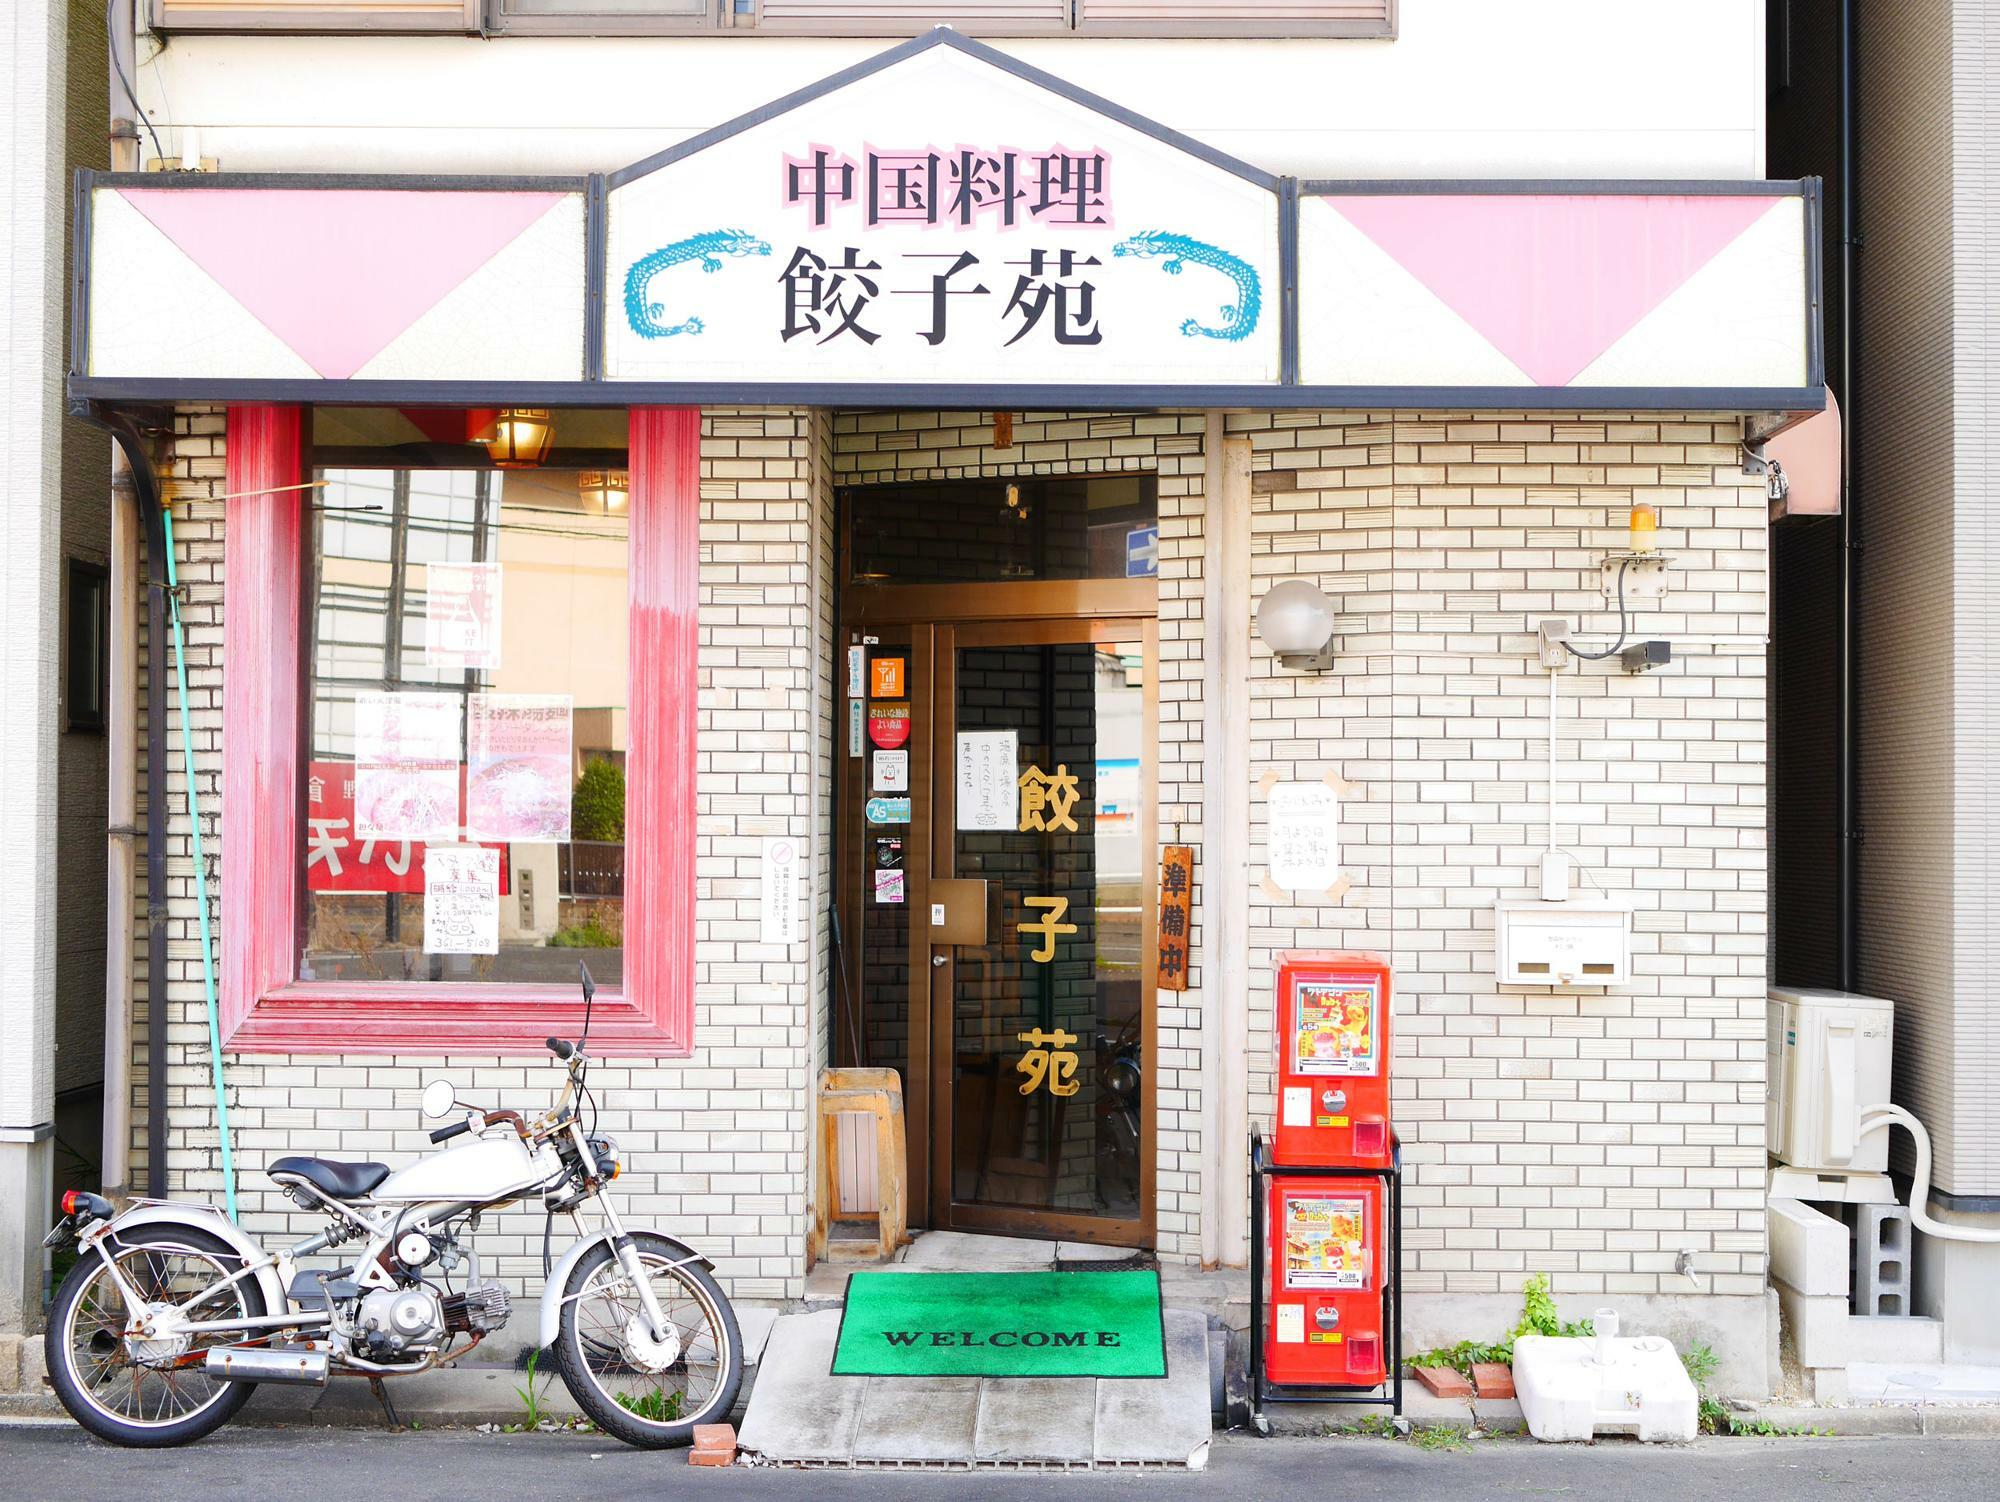 中川区で営む餃子苑さんは創業50年の老舗でメディアへの露出も多い。名古屋で町中華を味わうならまず外せないお店